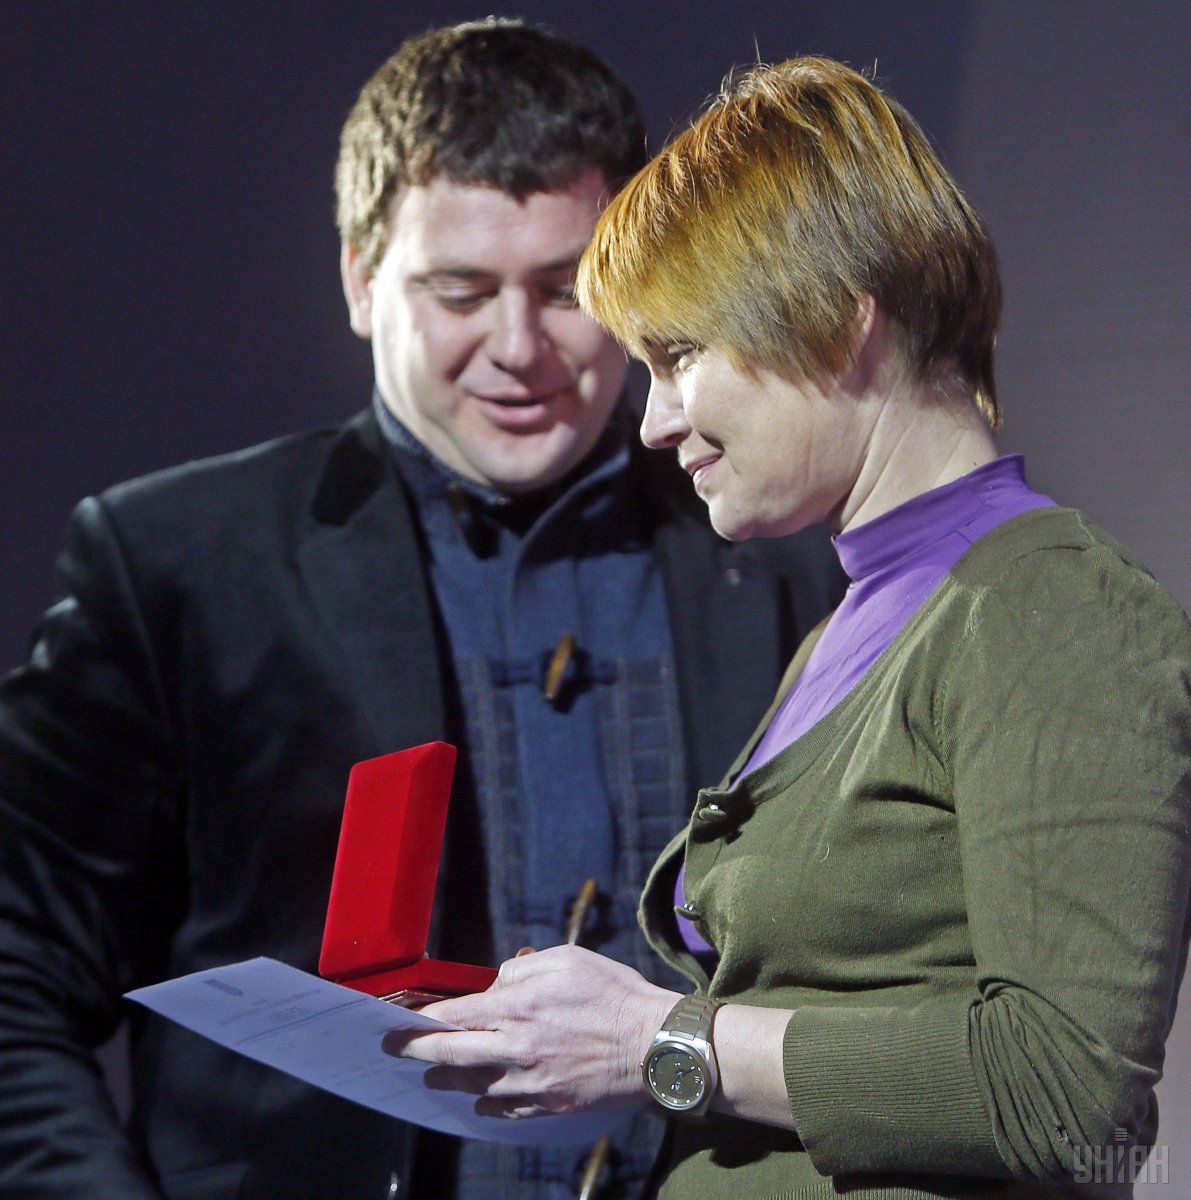 Lesia Lytvynova (Oleksandra Koval) received an award 